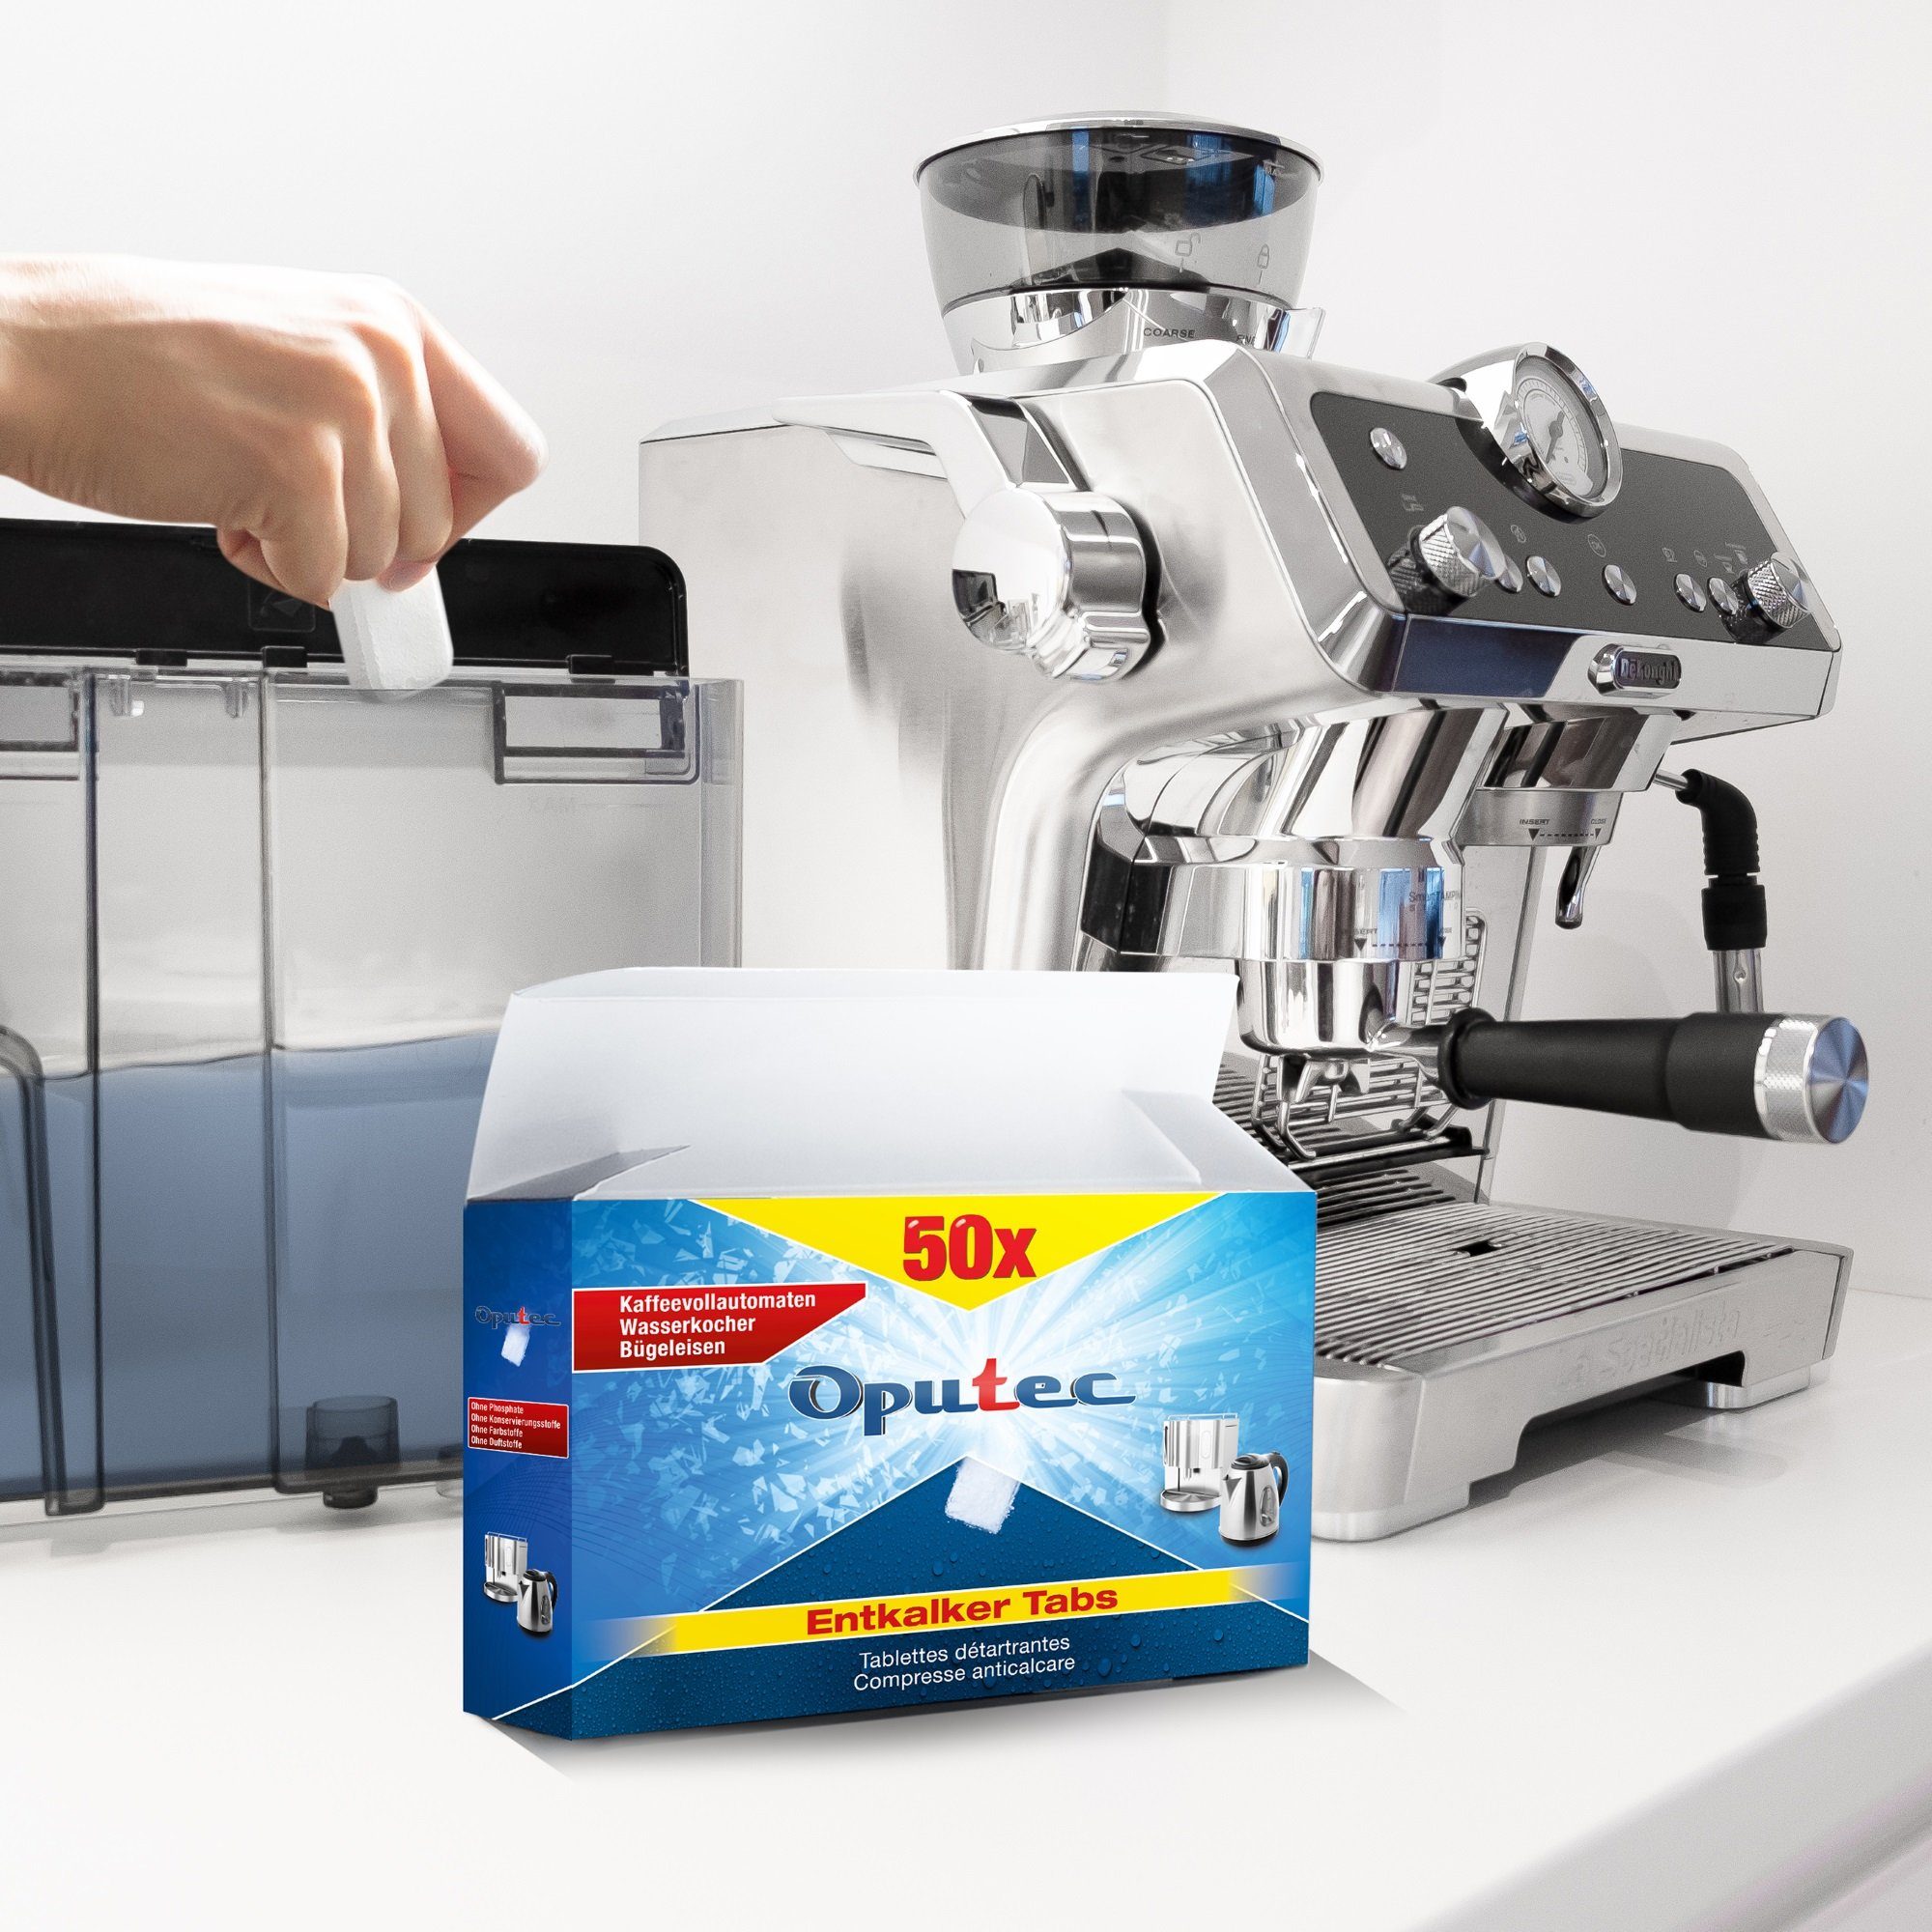 Oputec 50x Kaffeevollautomaten Entkalker Entkalkungstabletten Tabs Entkalkungstabletten